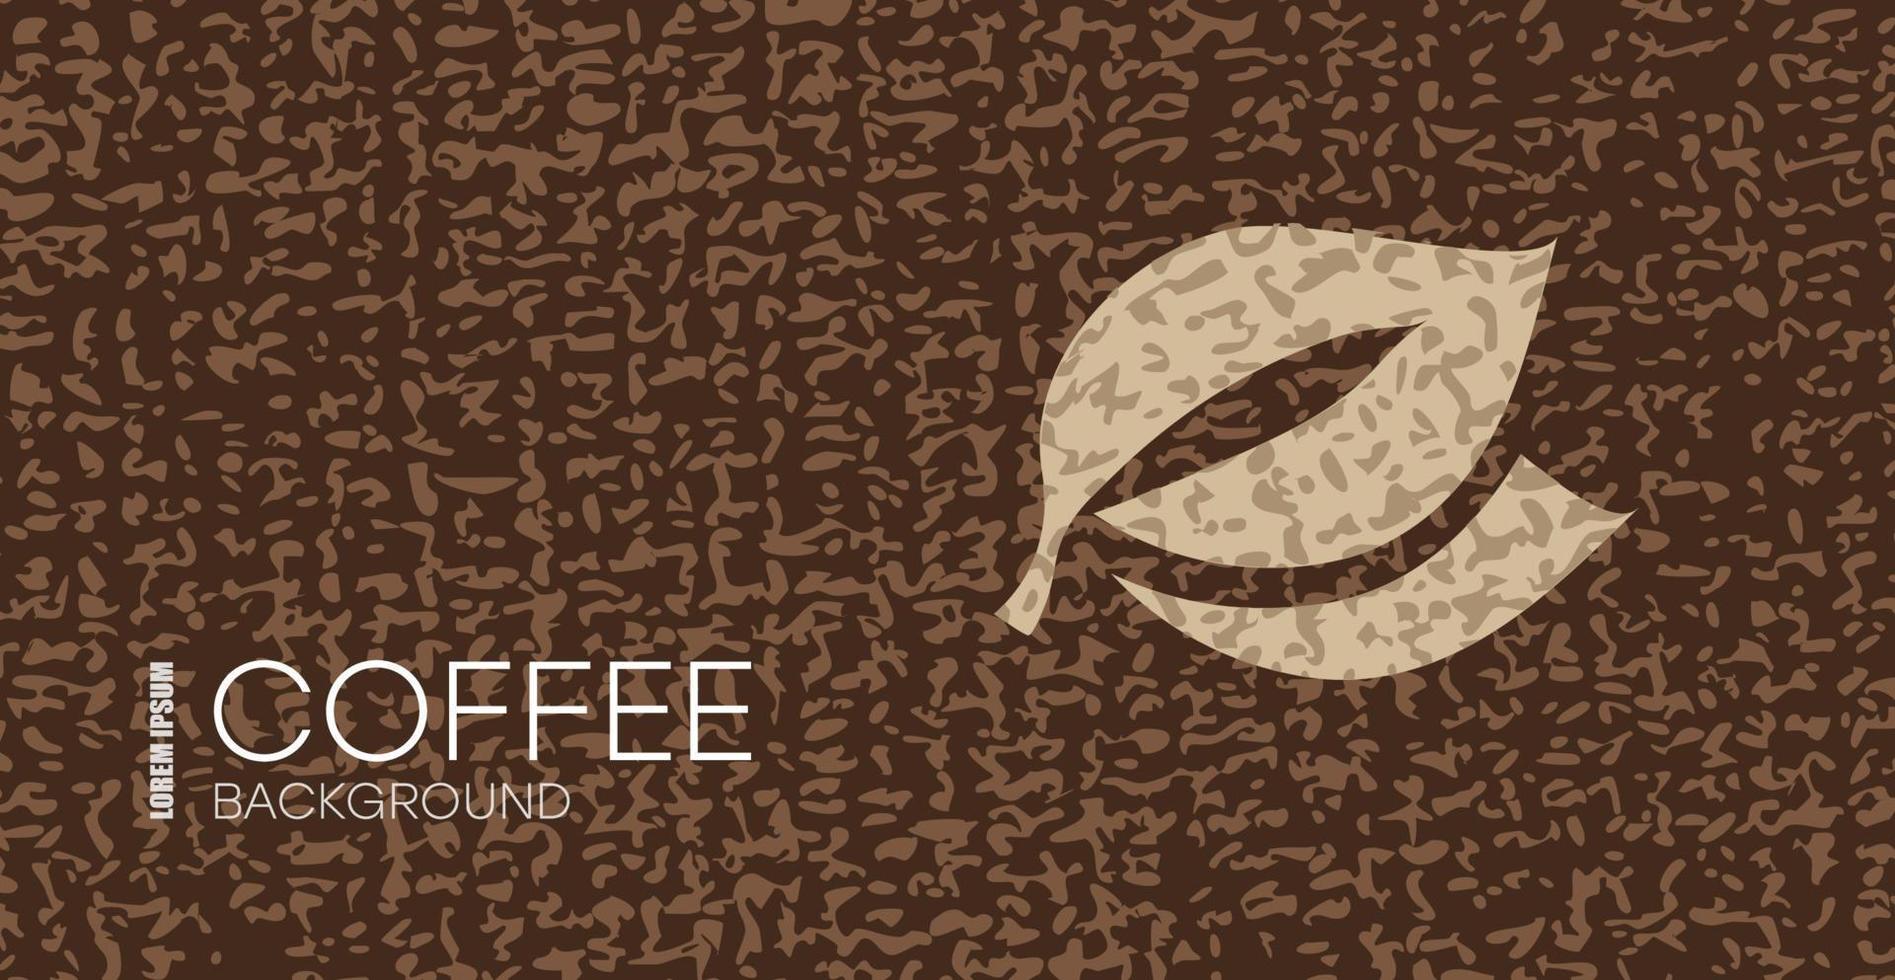 Kaffee Hintergrund mit Handzeichnung Gekritzel Elemente. vektor